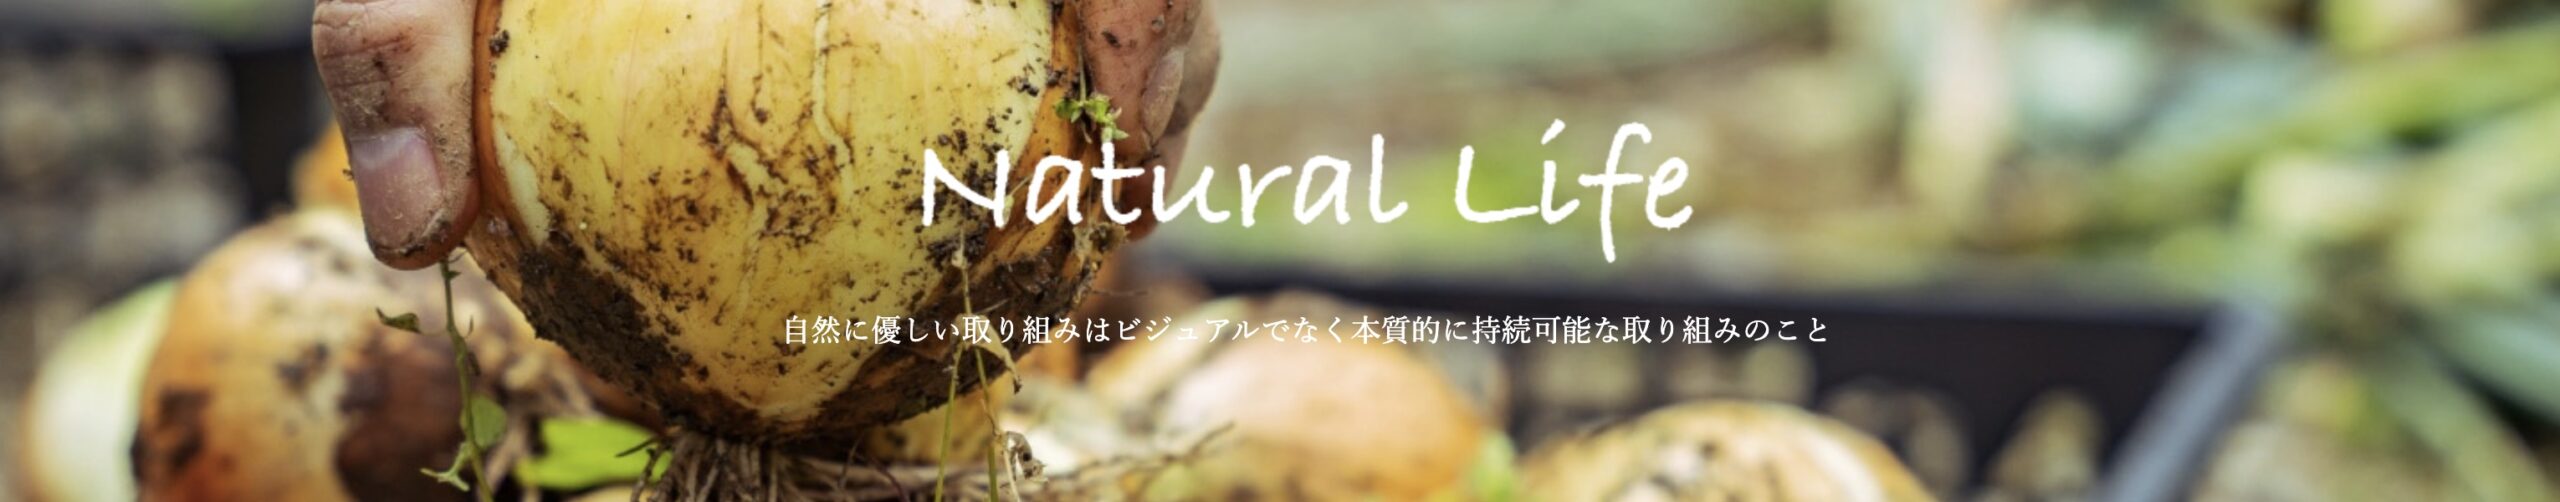 Naturallife